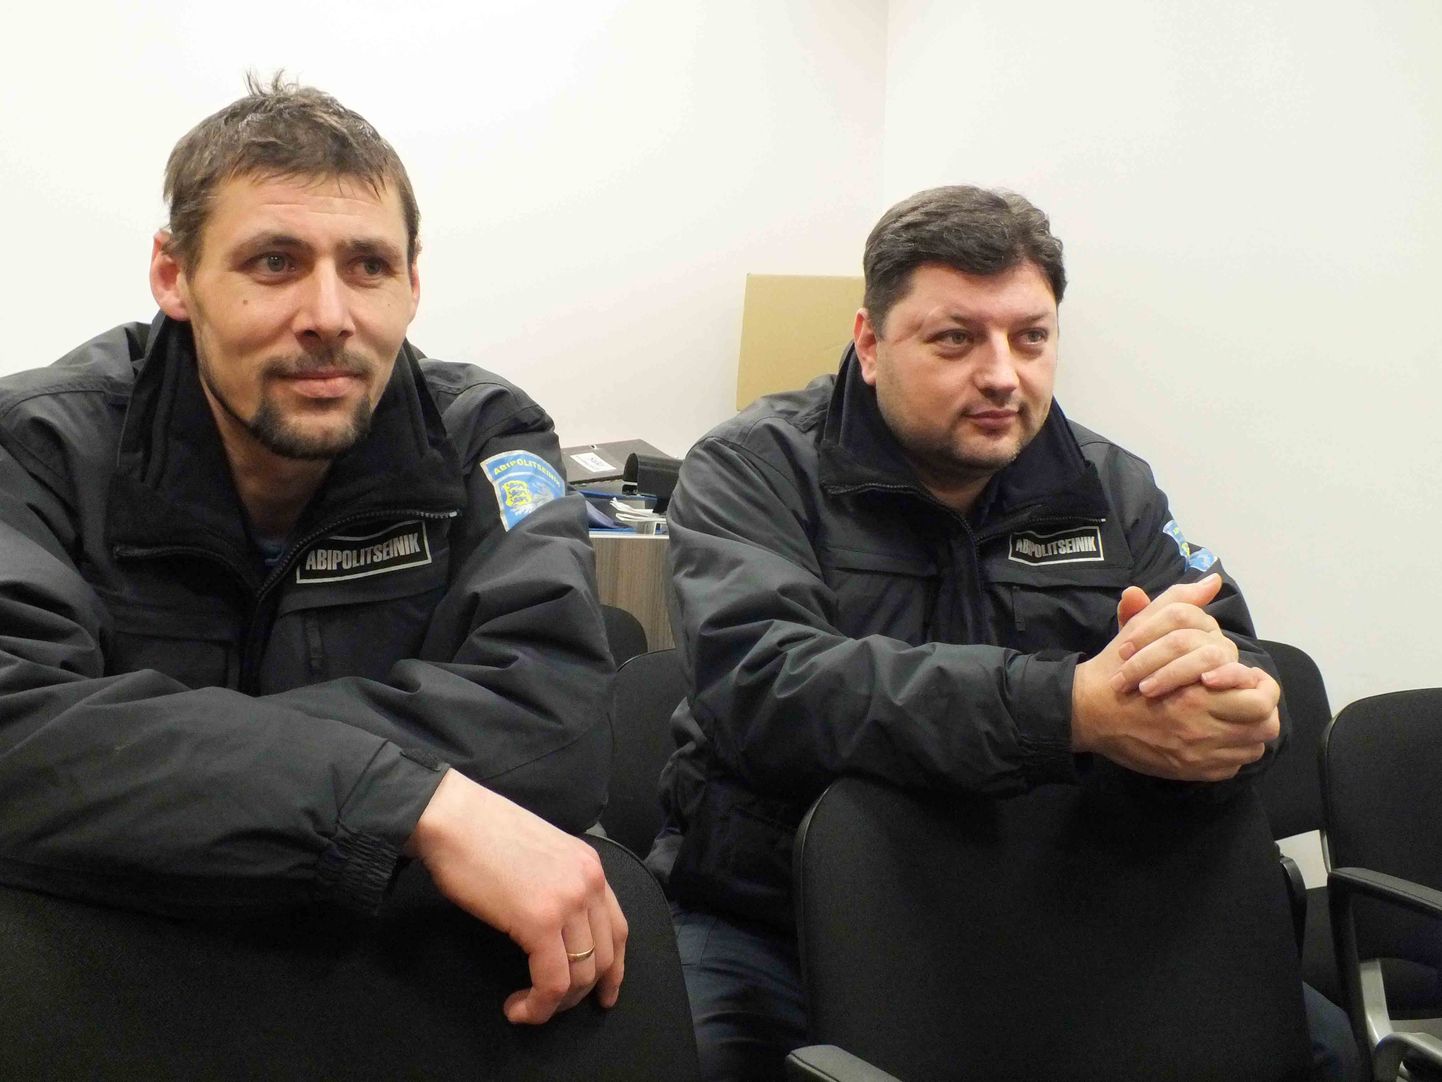 Айвар Кийк (слева) и Юрий Марух уверены, что в качестве помощников полиции приносят пользу городу, где живут.